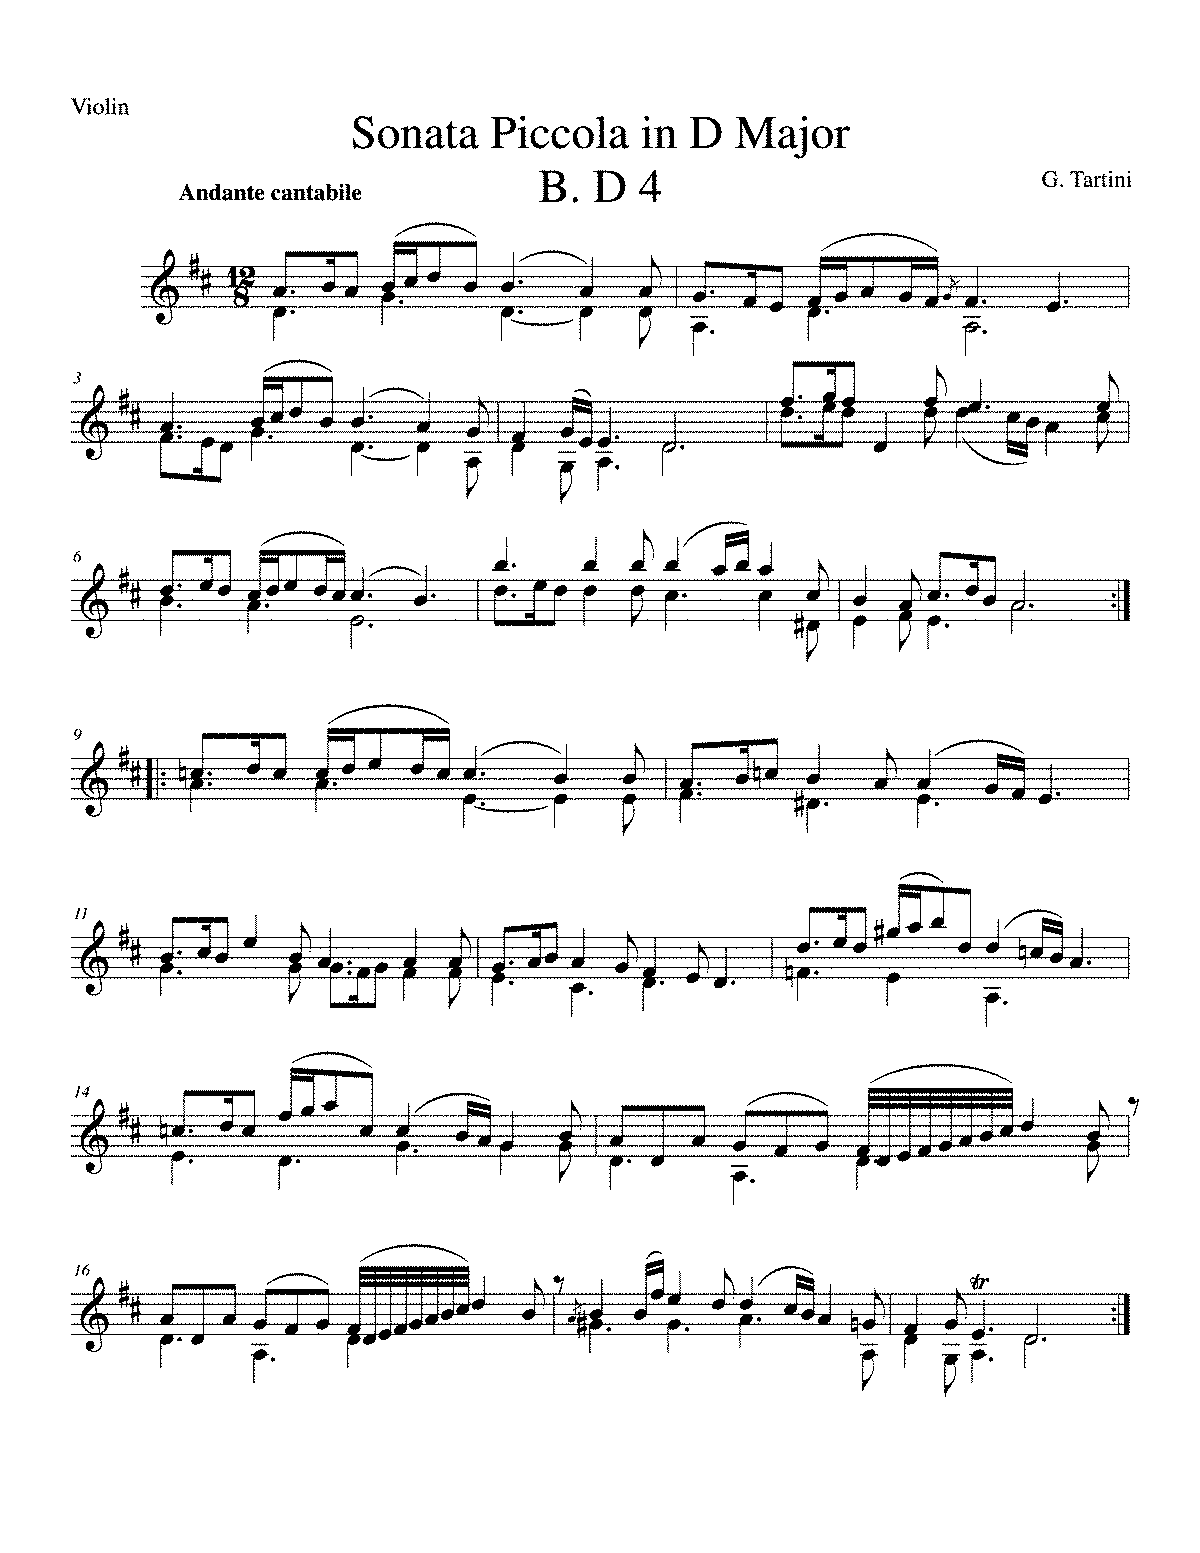 Violin Sonata in D major, GT 2.D04 (Tartini, Giuseppe) - IMSLP